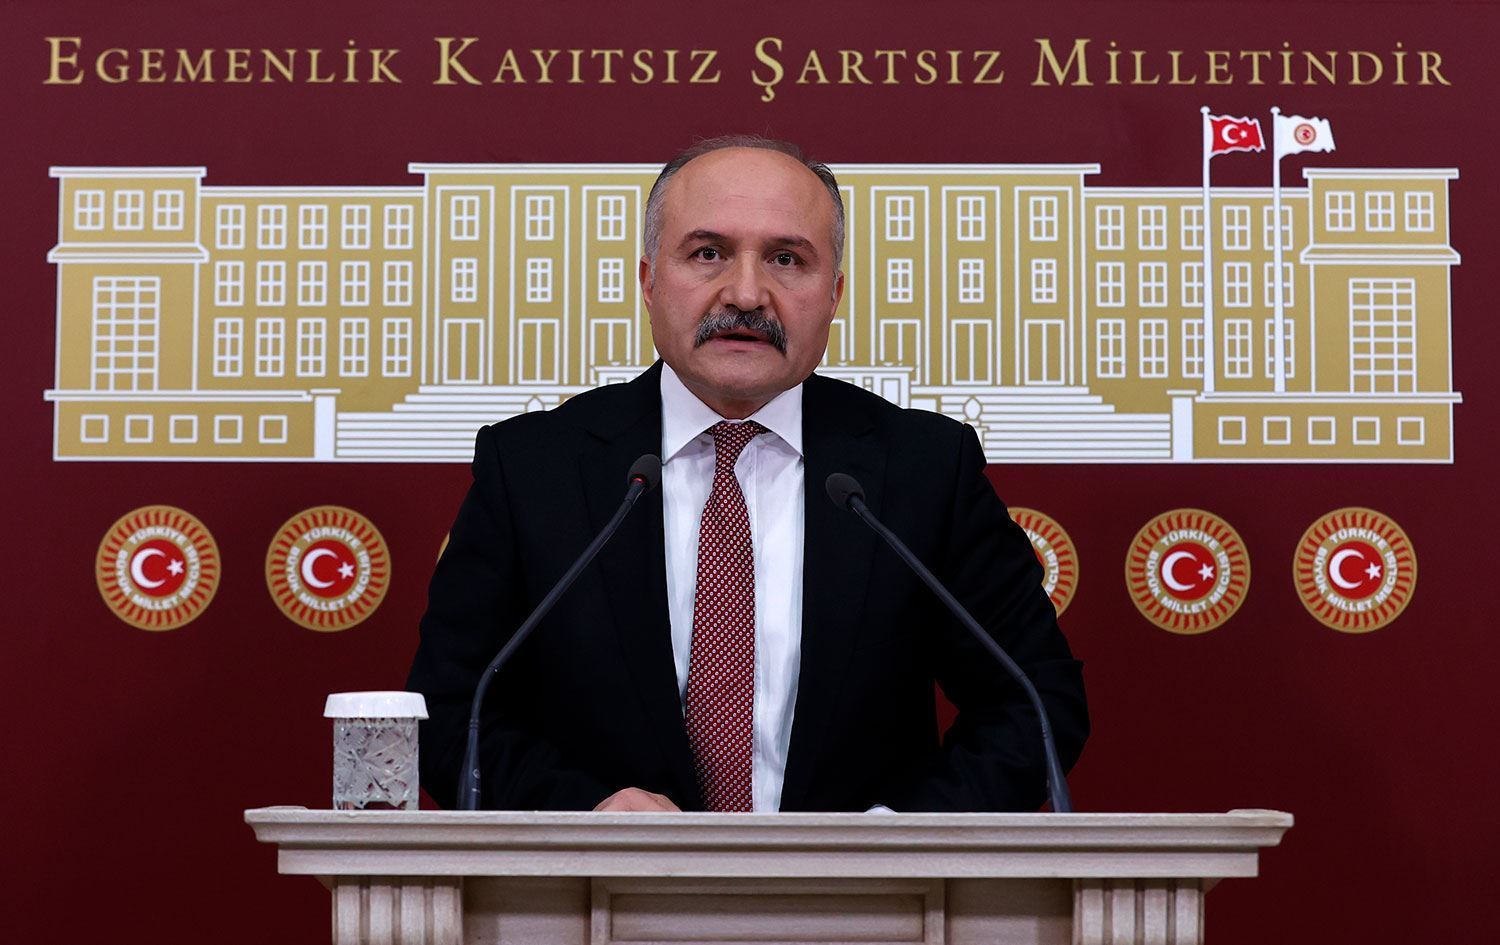 Samsun Milletvekili Erhan Usta, İyi̇ Parti Ekonomi Politikaları Başkanlığı'na Atandı! (2)